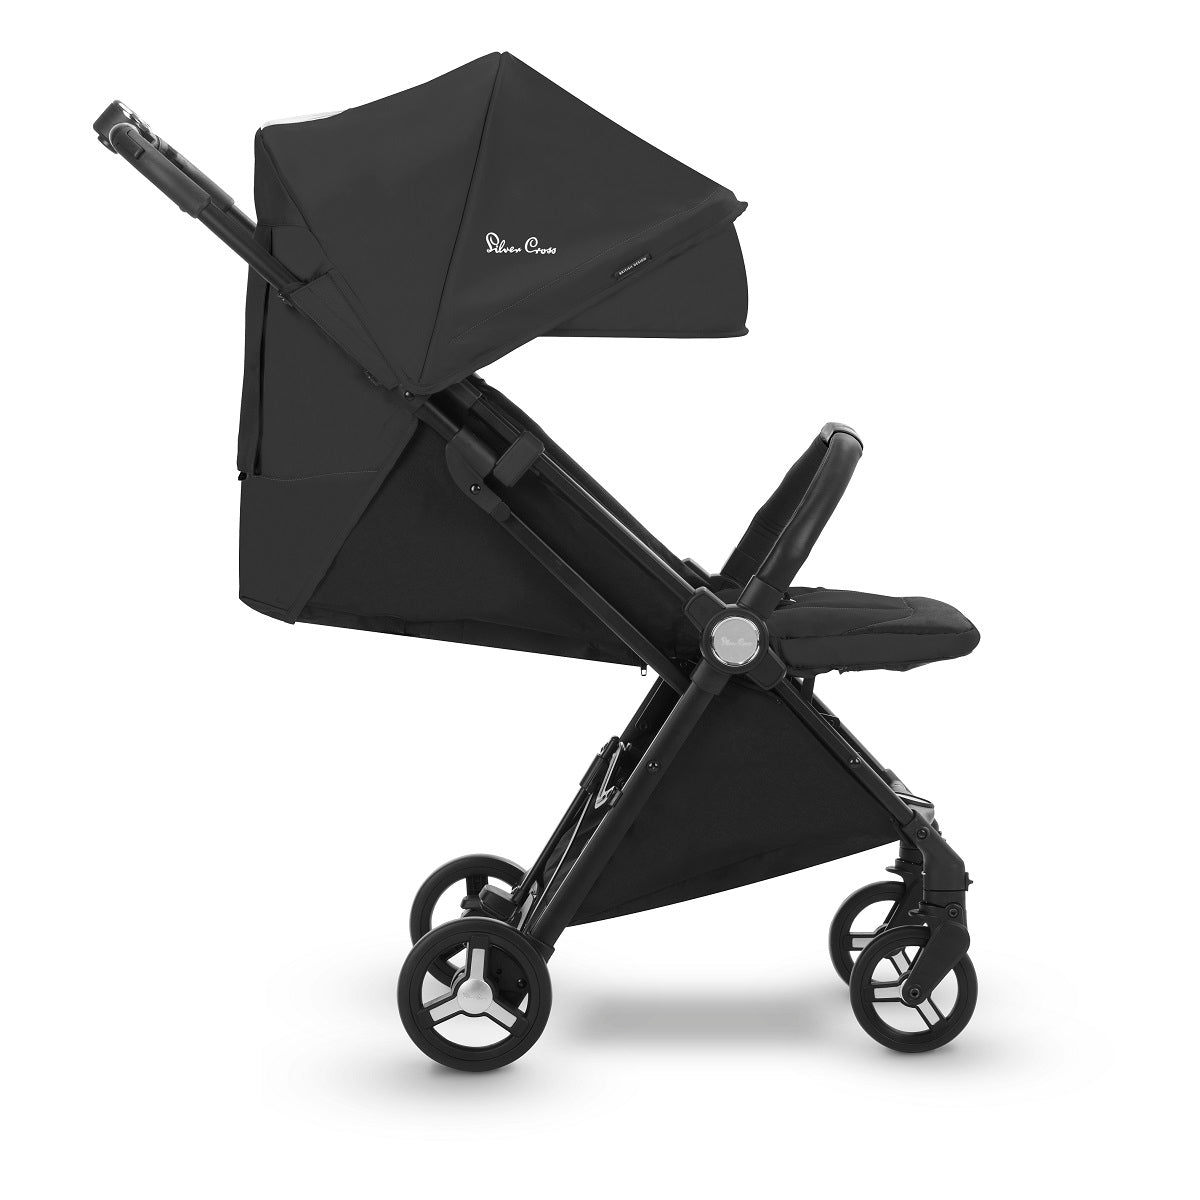 lightest stroller for newborn